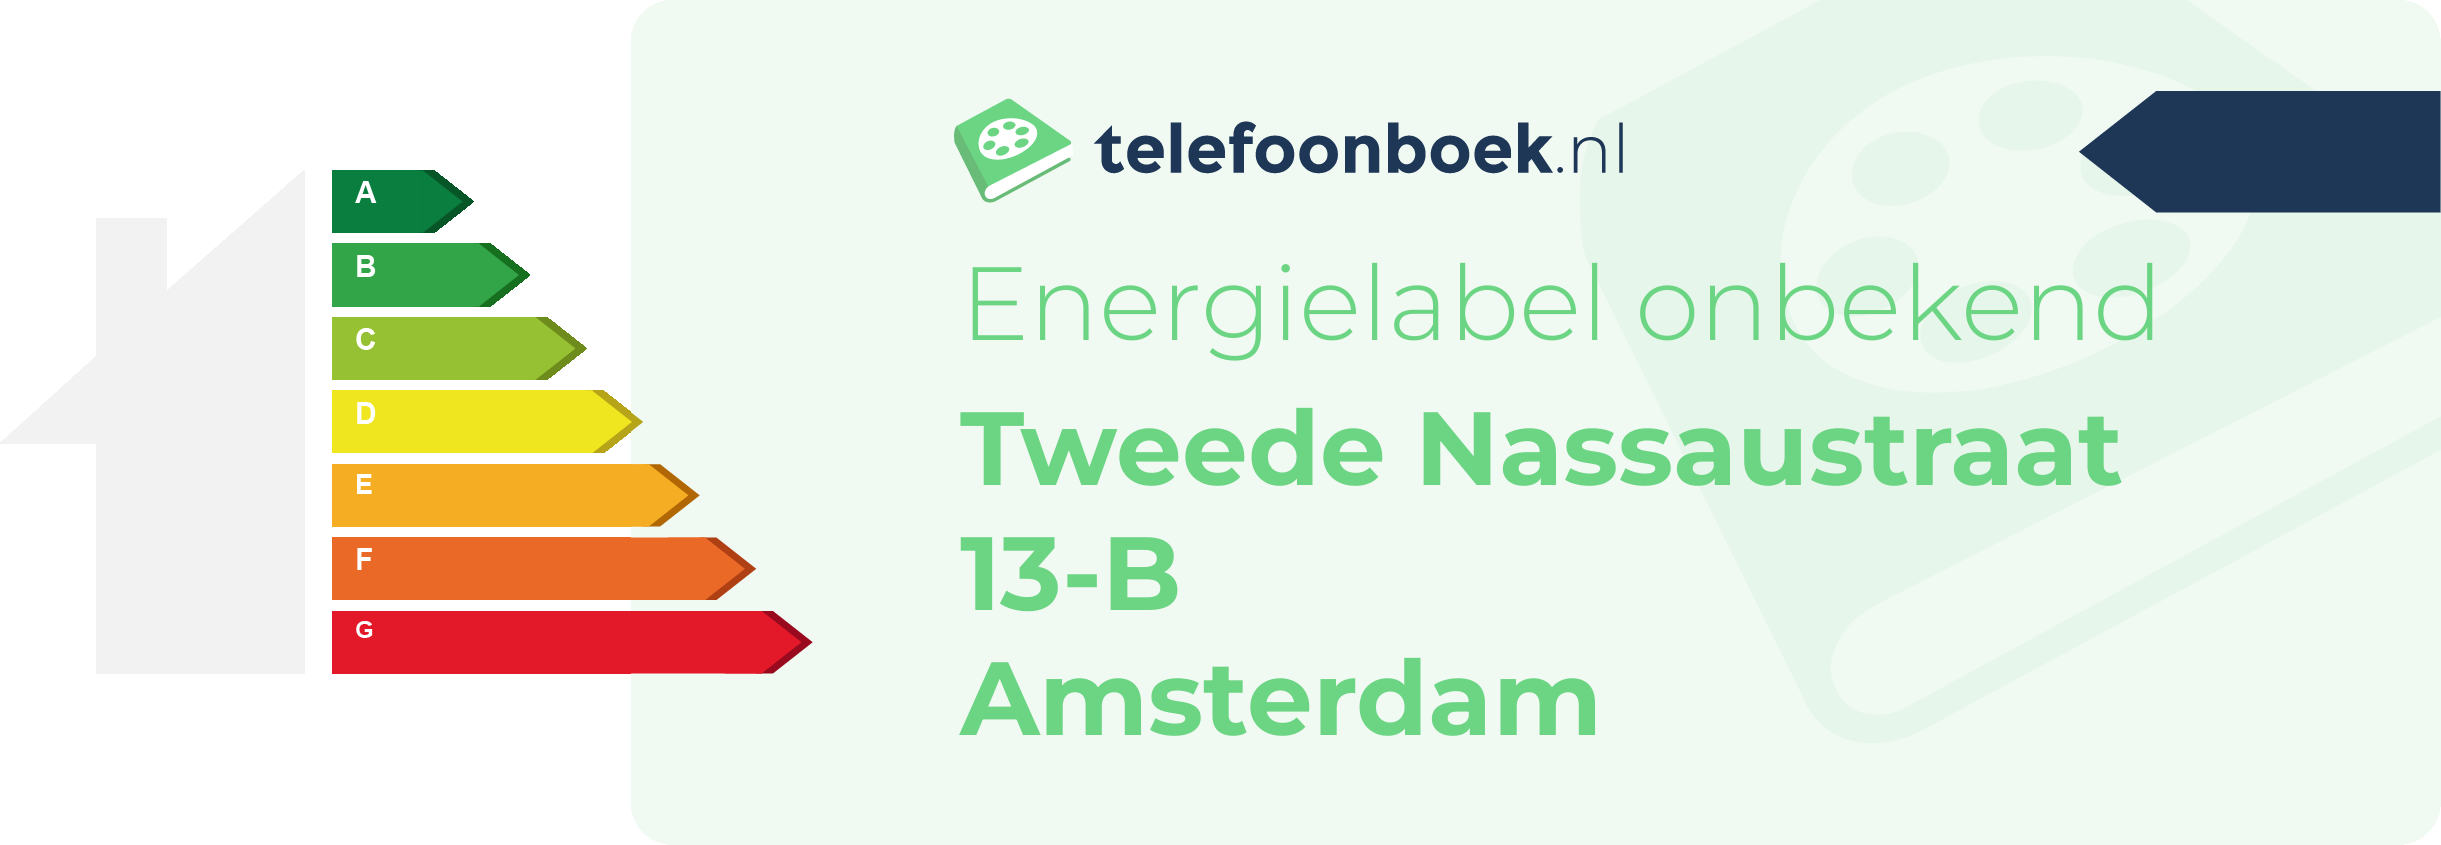 Energielabel Tweede Nassaustraat 13-B Amsterdam